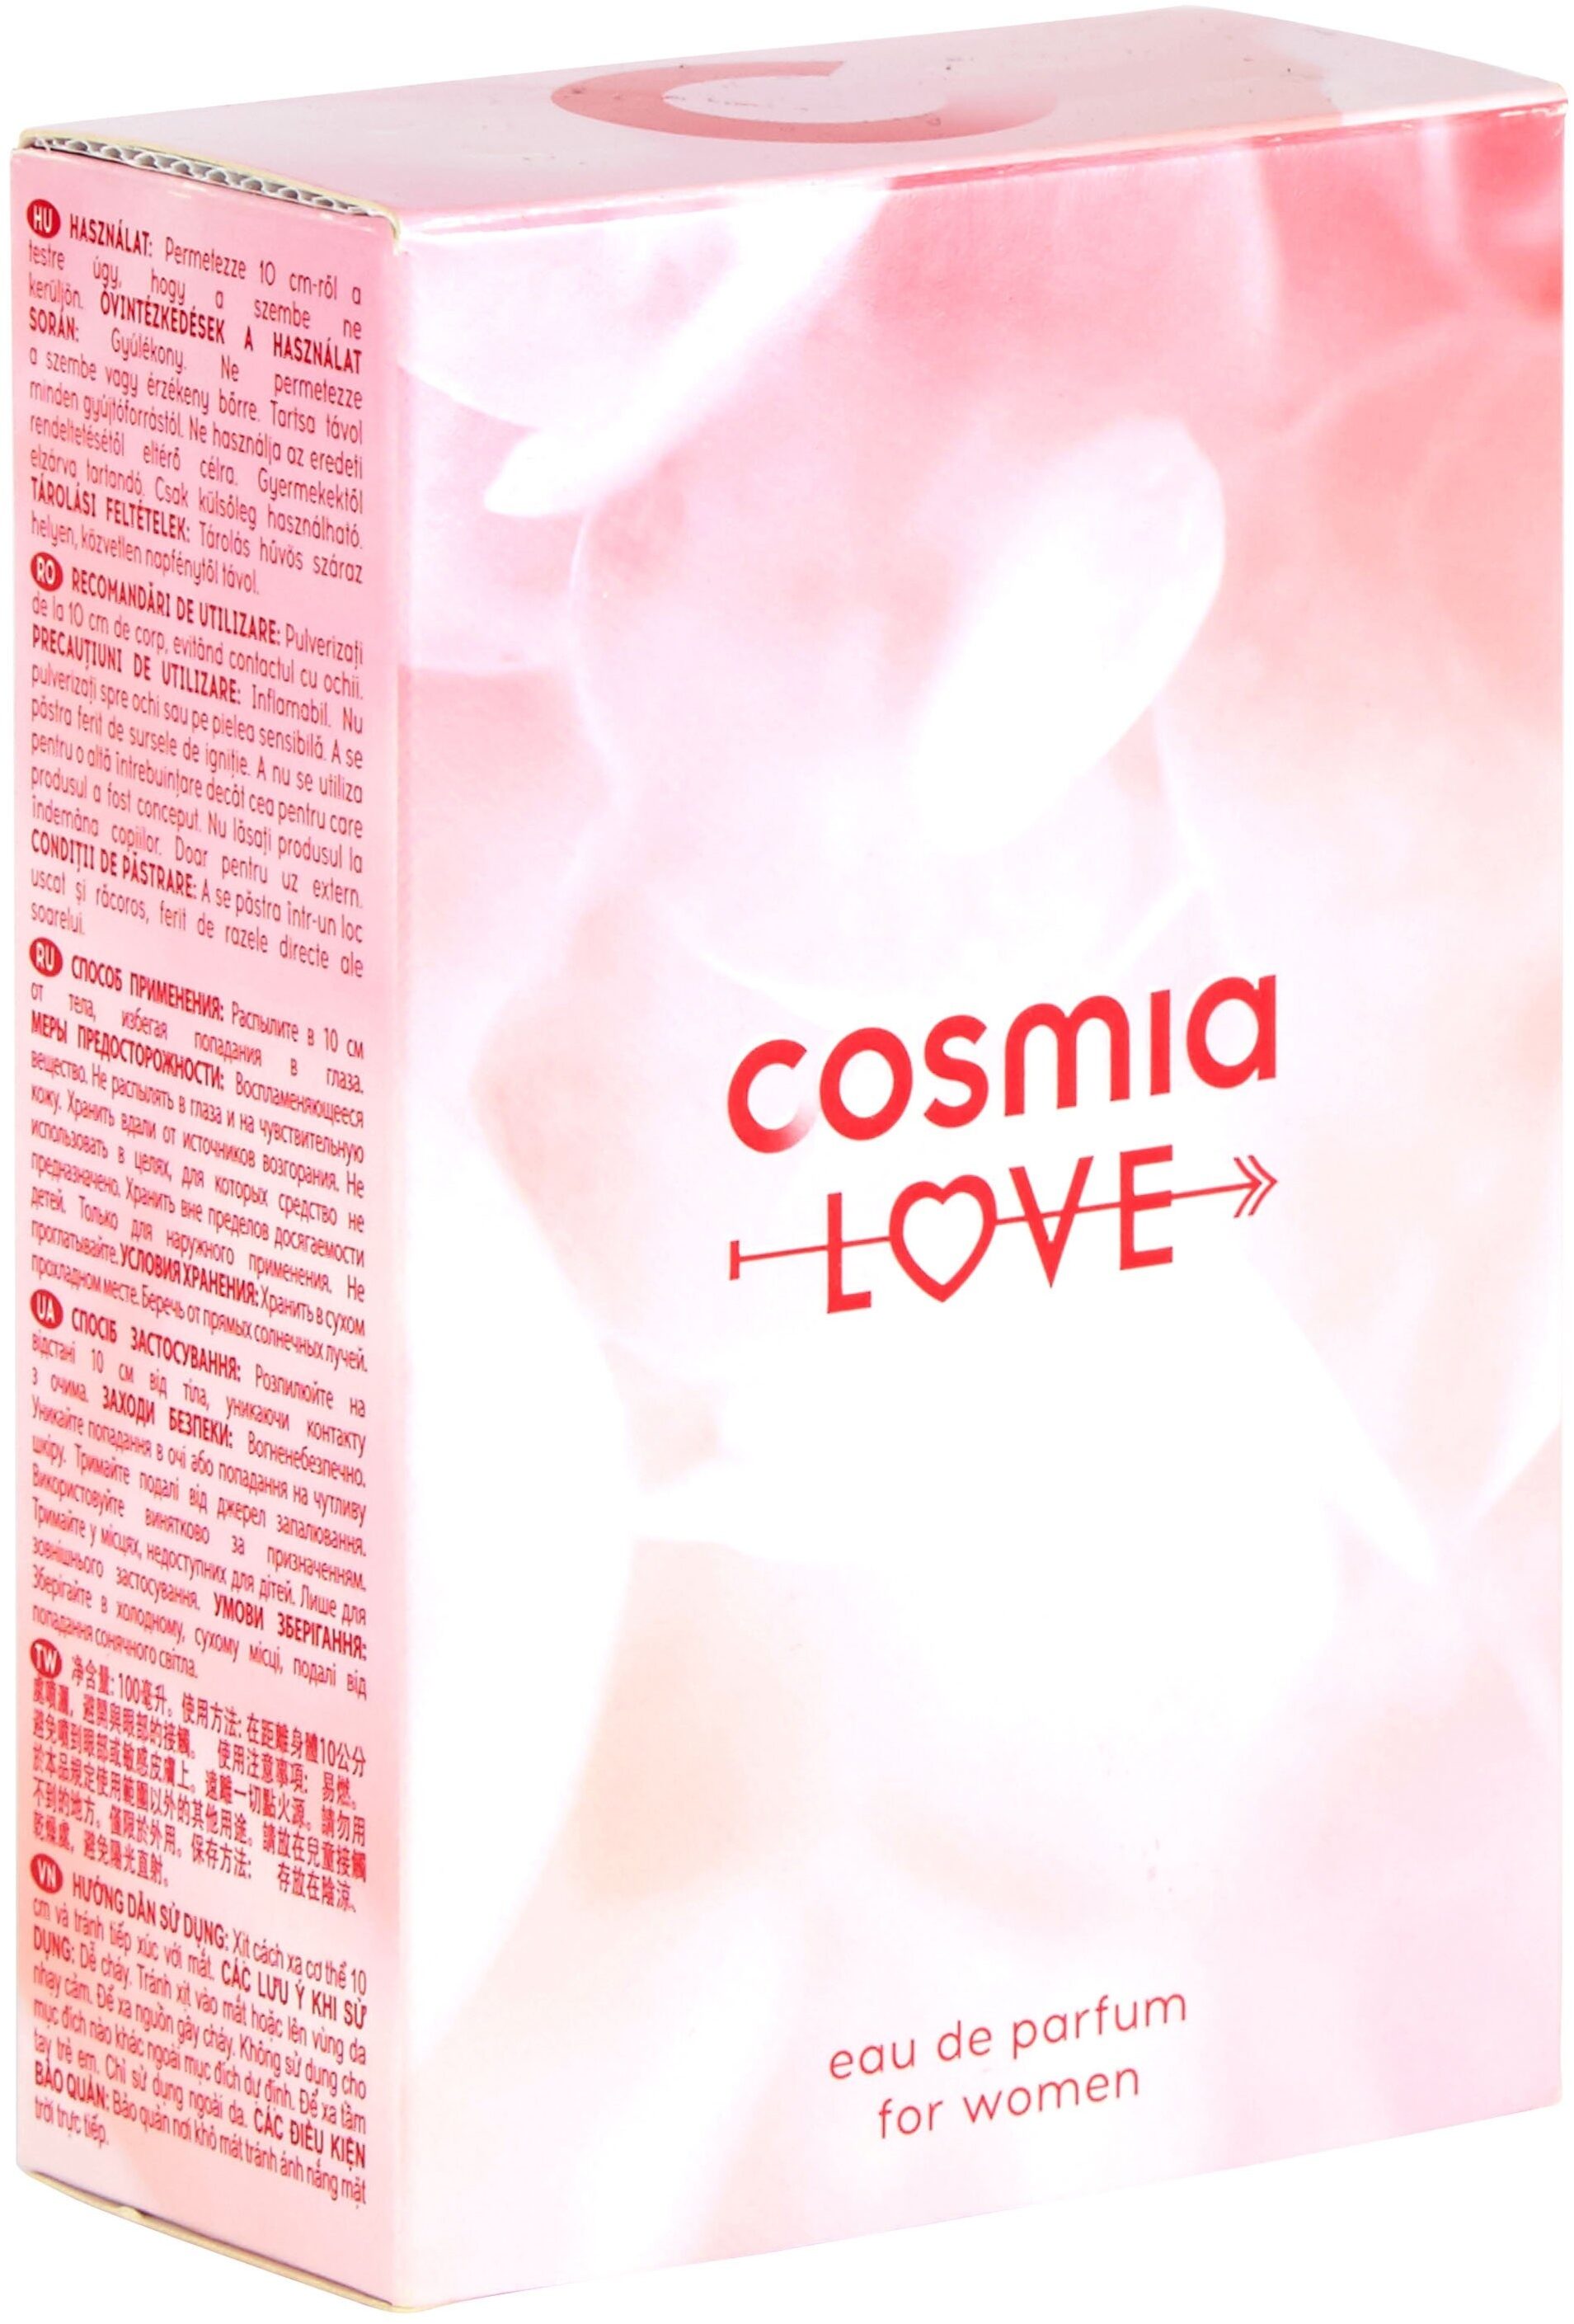 Cosmia - eau de parfum - cosmia amour - pour femme - 100 ml - Продукт - fr